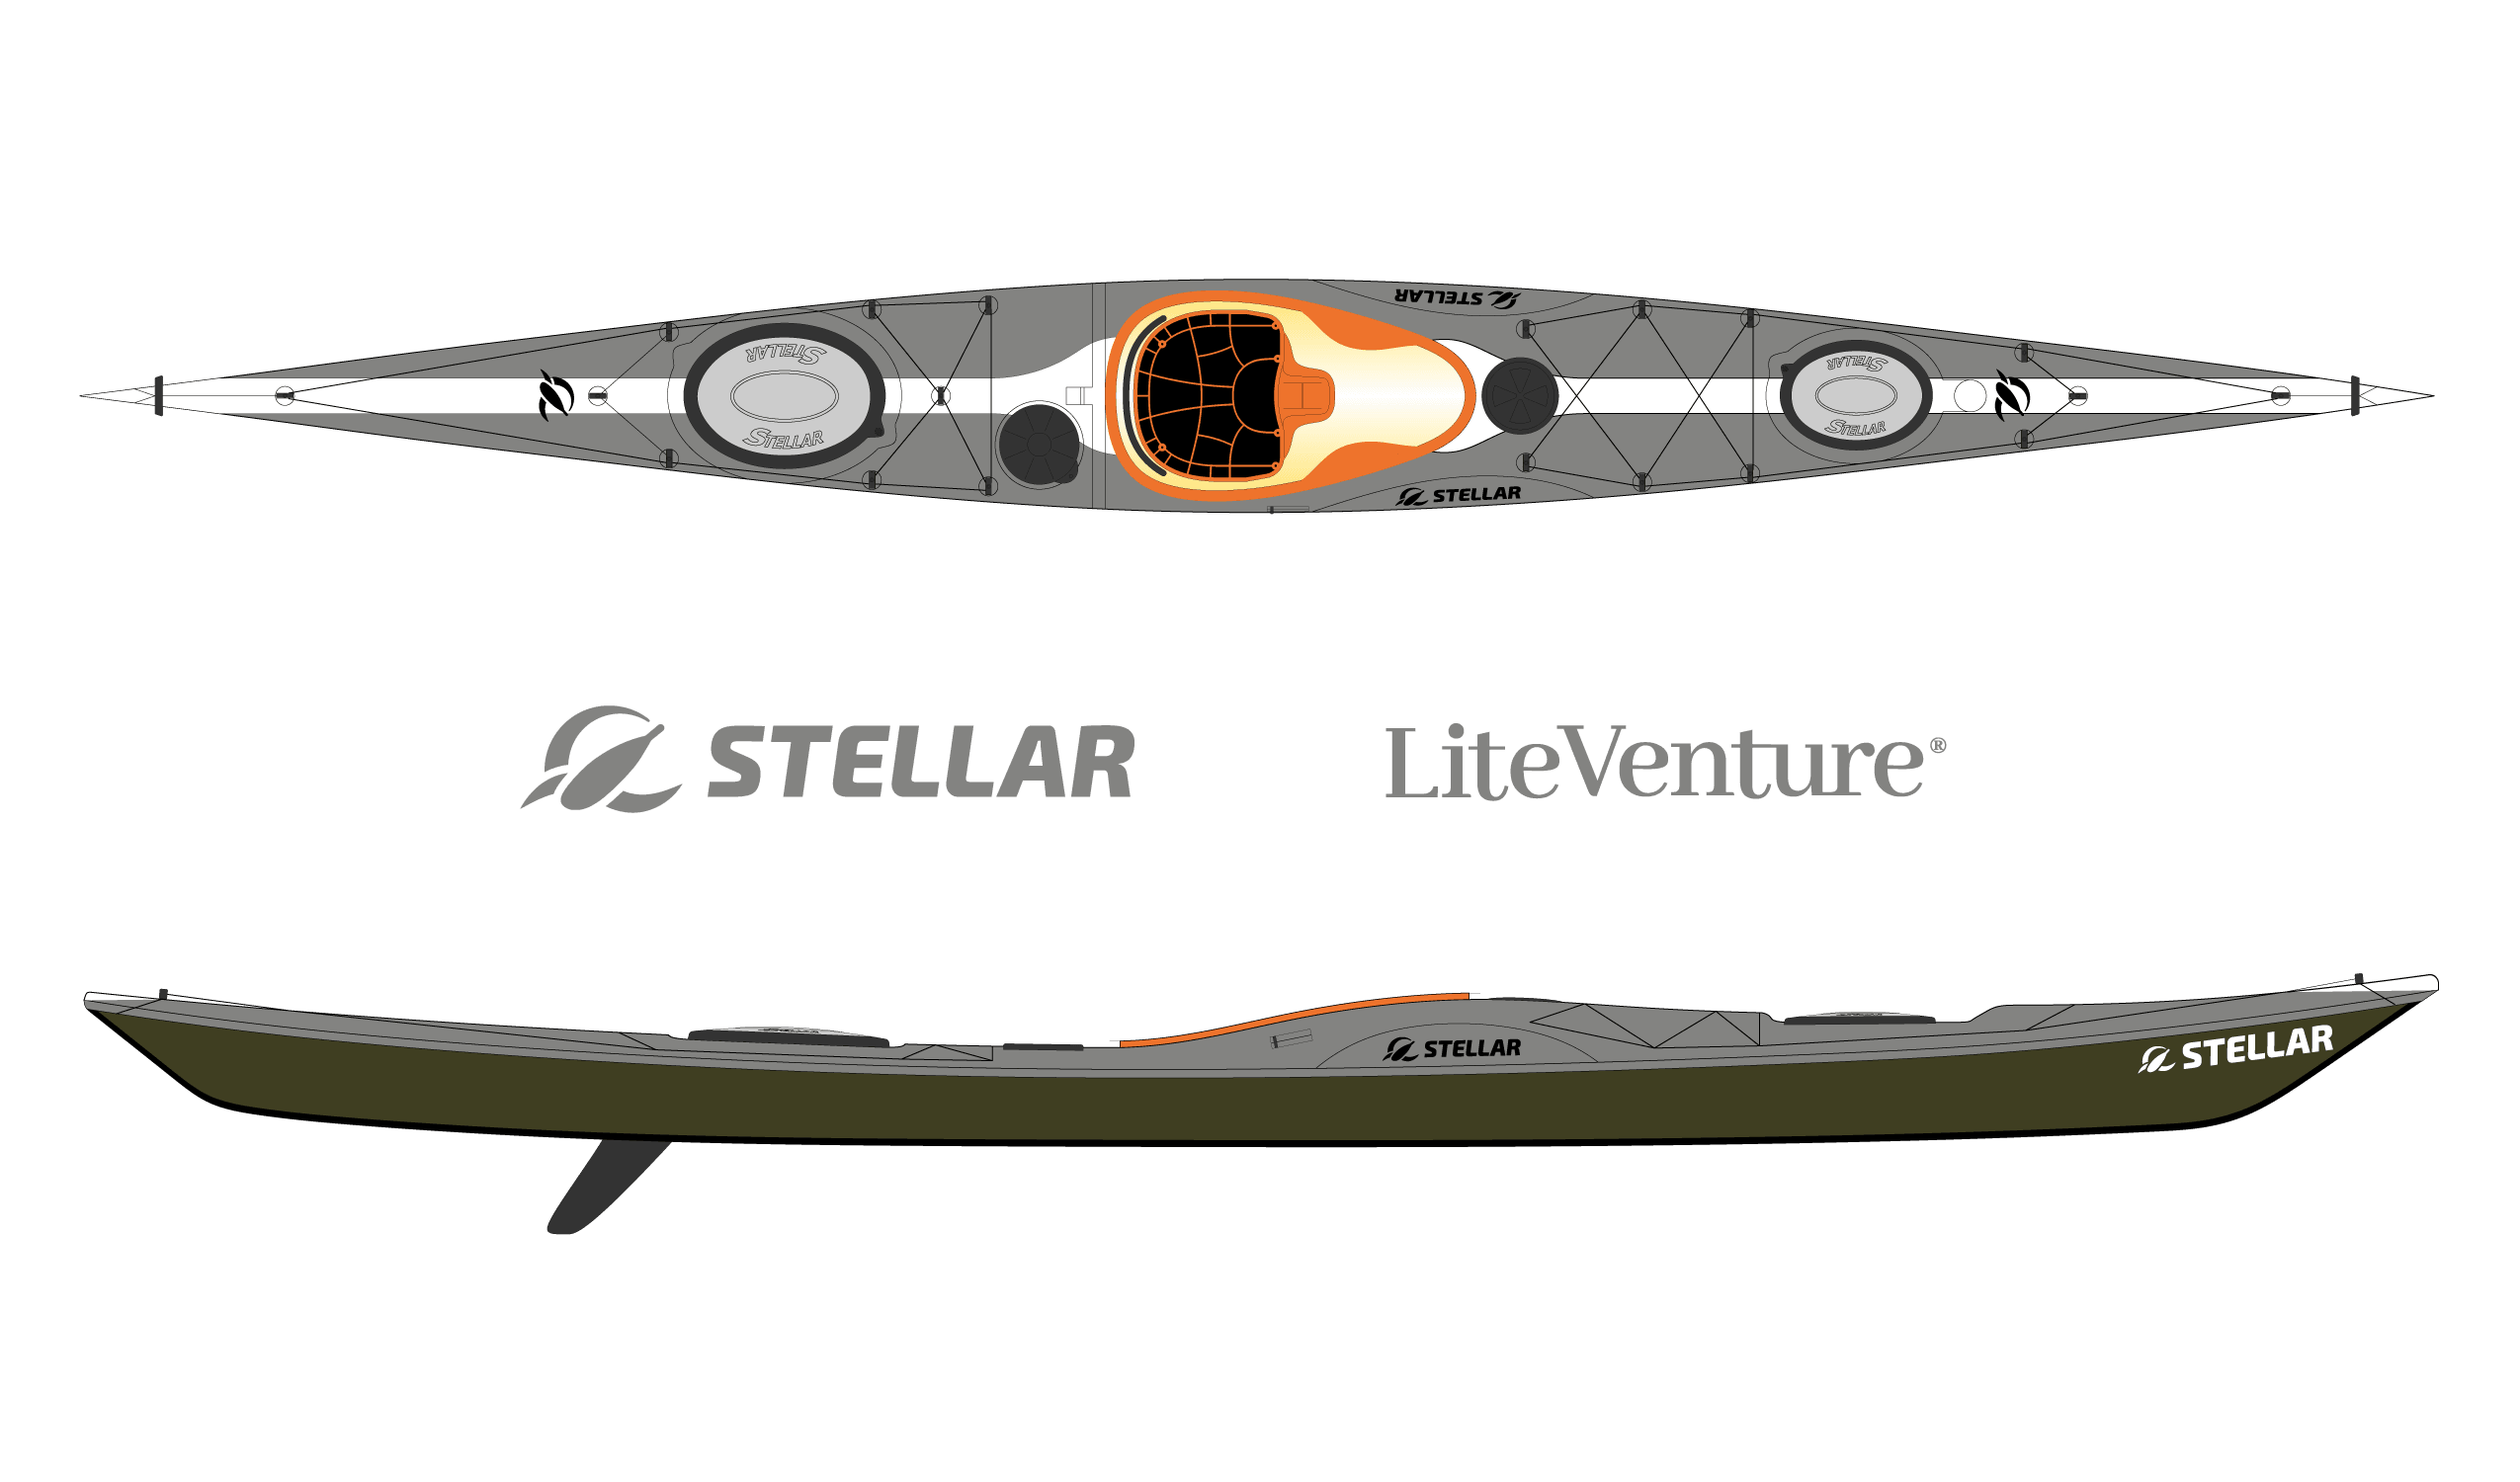 Produktbild von Kajak " SI18 Multisport-grau weiß " der Marke STELLAR Lightweight für 3550.00 €. Erhältlich online bei Lite Venture ( www.liteventure.de )